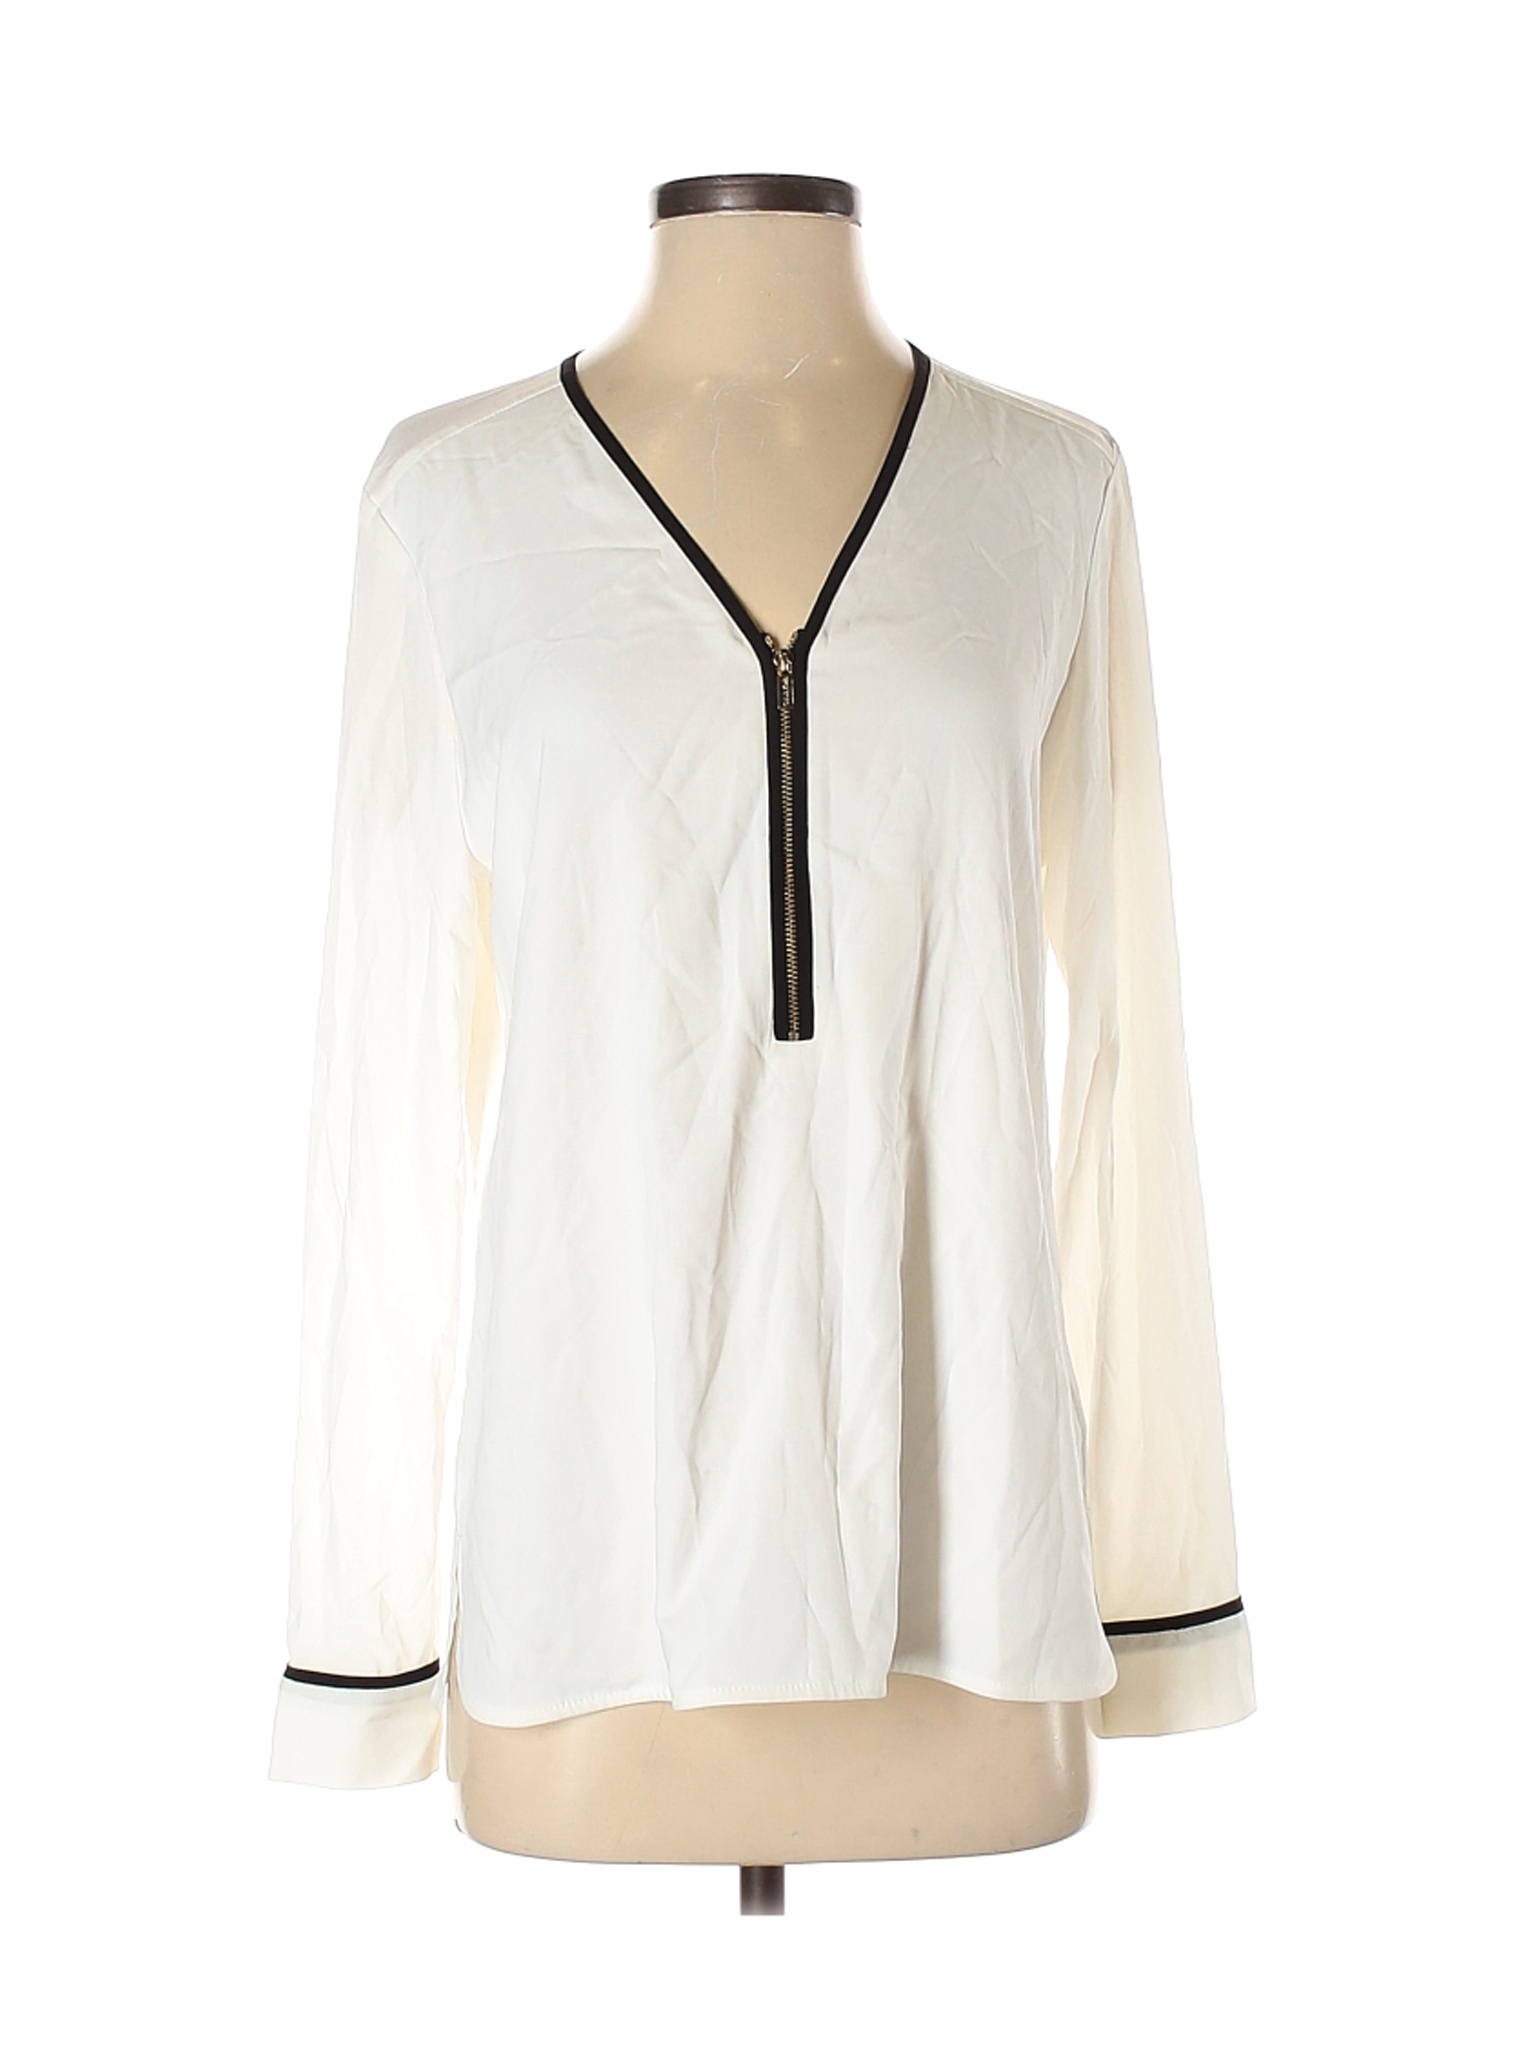 Calvin Klein Women White Long Sleeve Blouse S | eBay